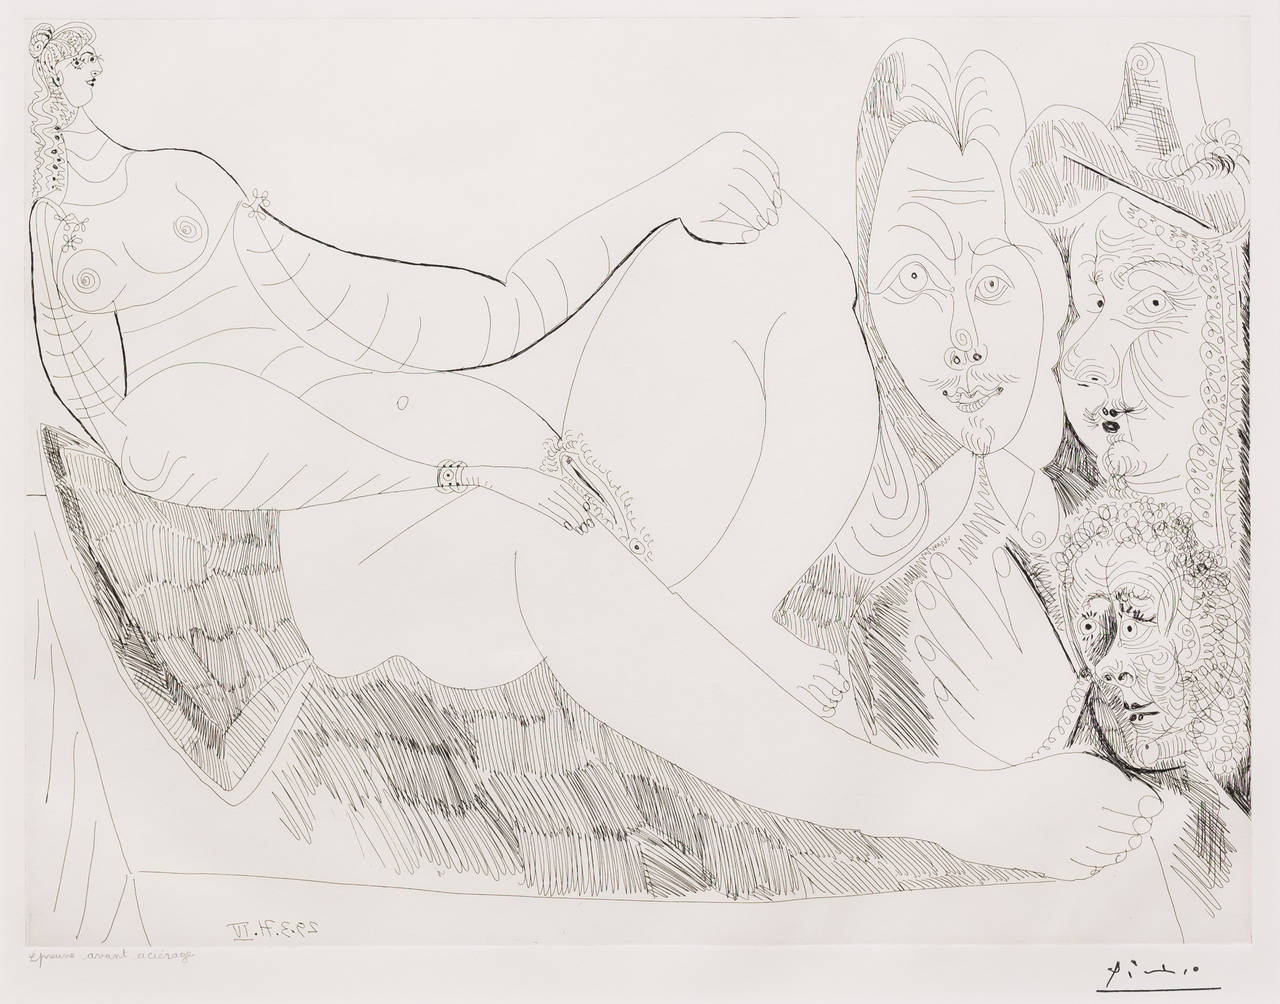 Femme au Lit avec Visiteurs en Costume du XVII Siecle - Print by Pablo Picasso